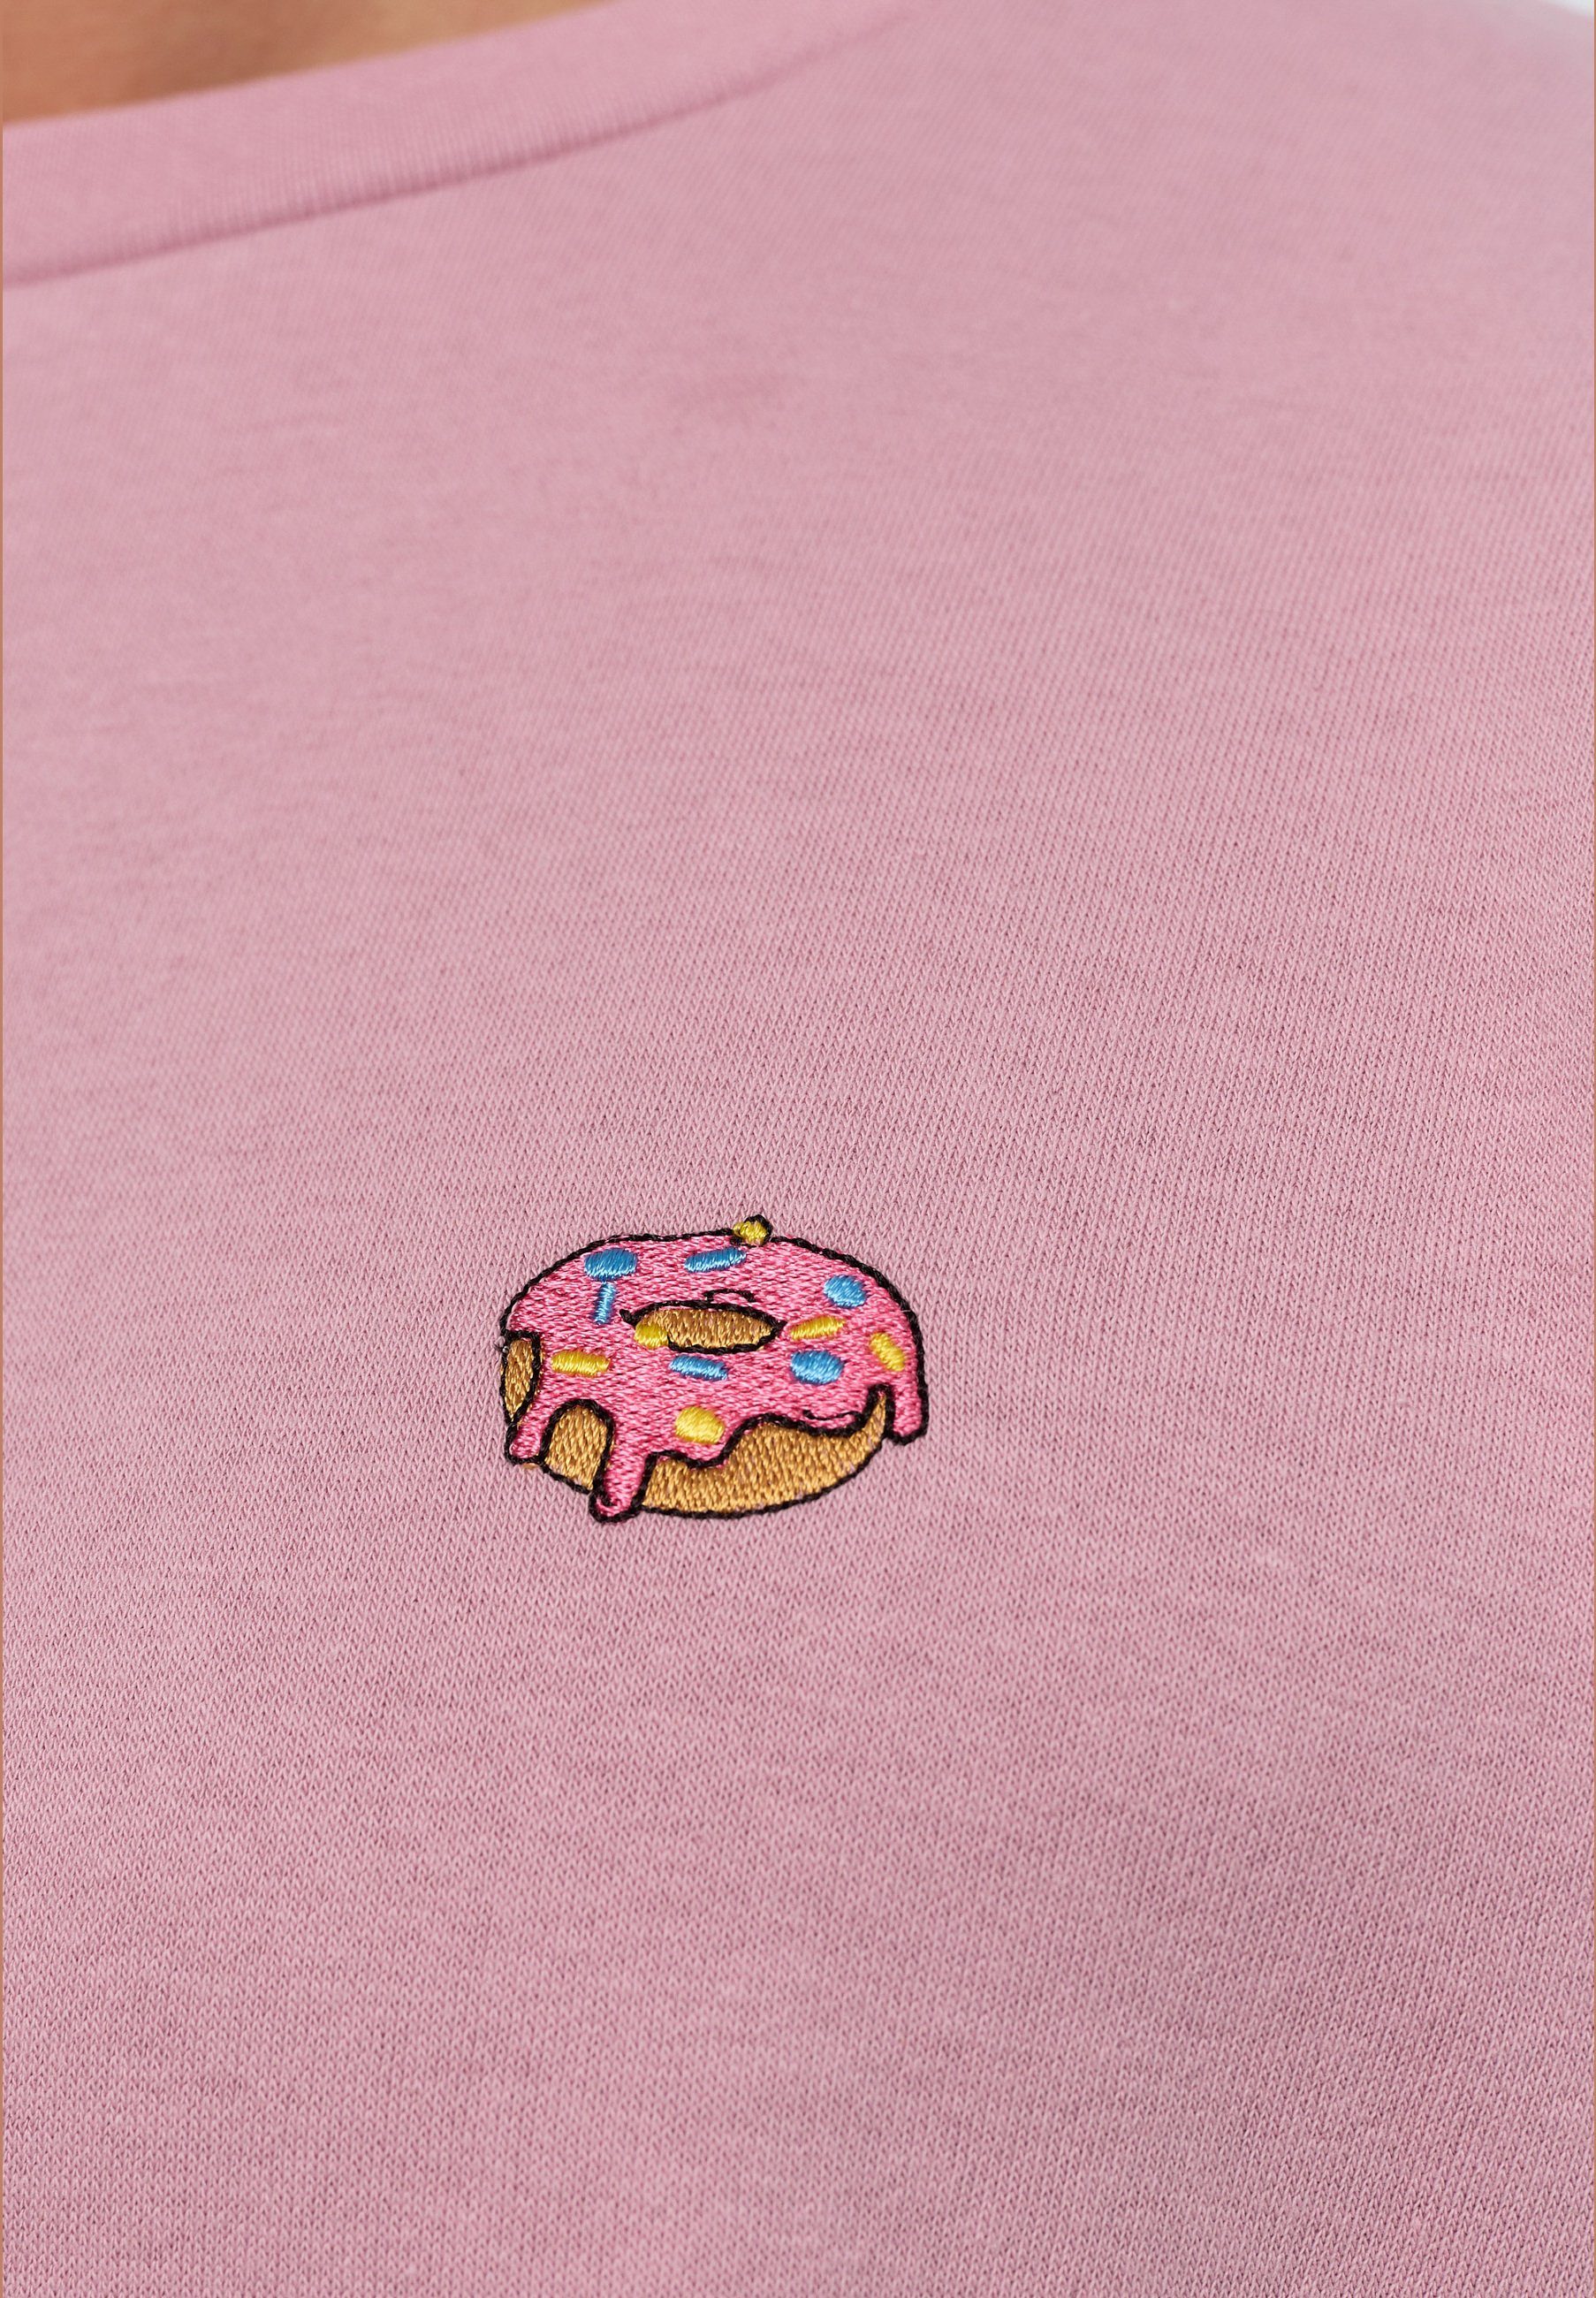 MIKON Donut zertifizierte Bio-Baumwolle Sweatshirt GOTS Pink